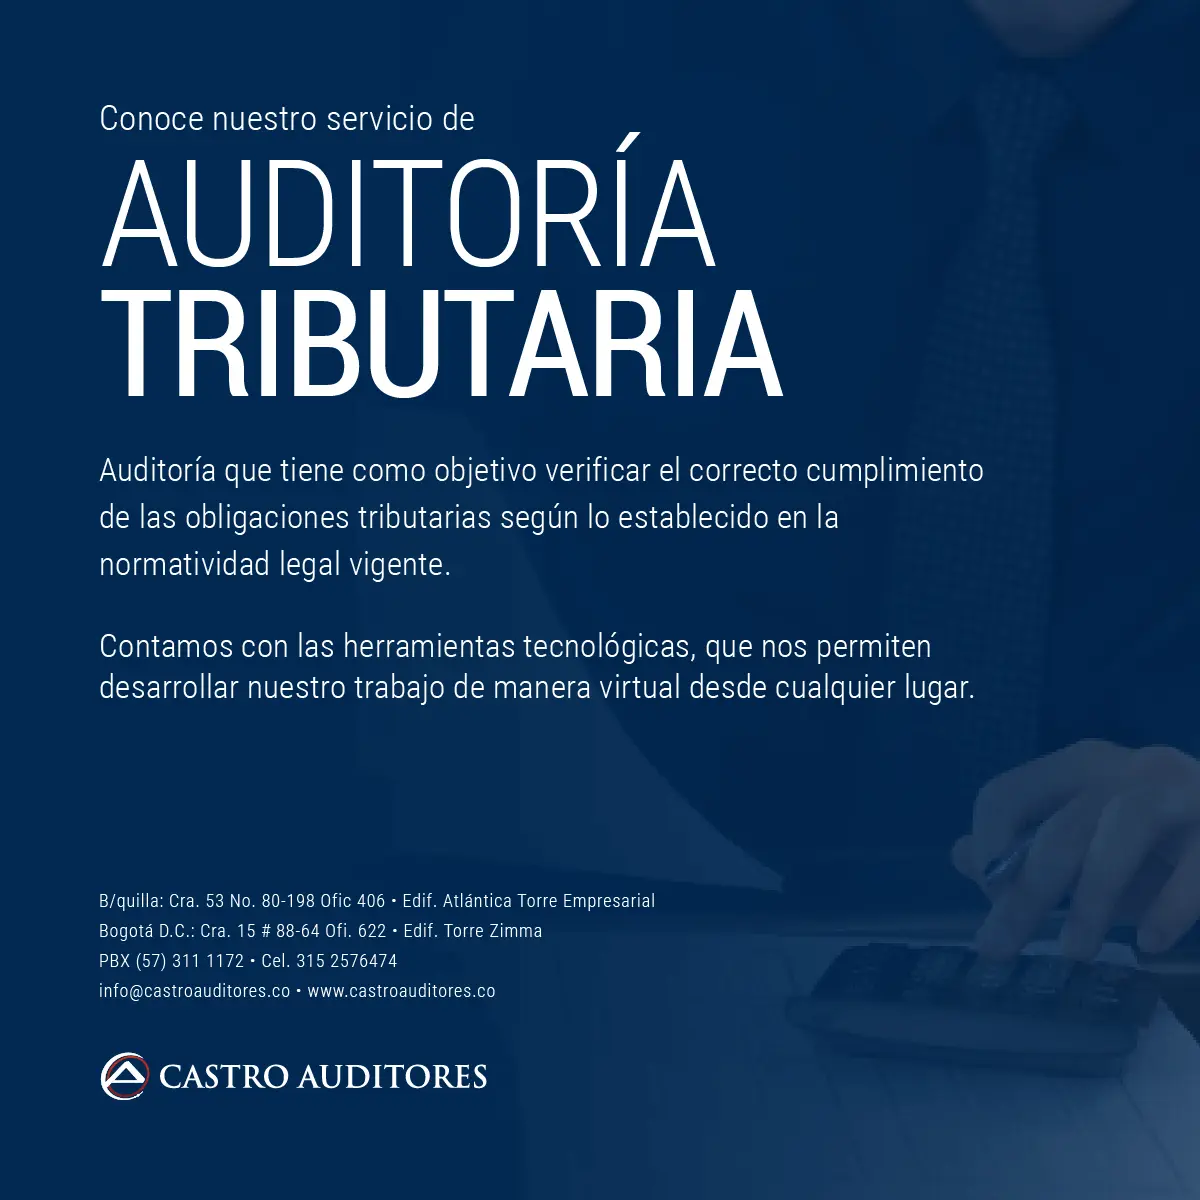 auditoria tributaria - Qué es un programa de Auditoría Tributaria